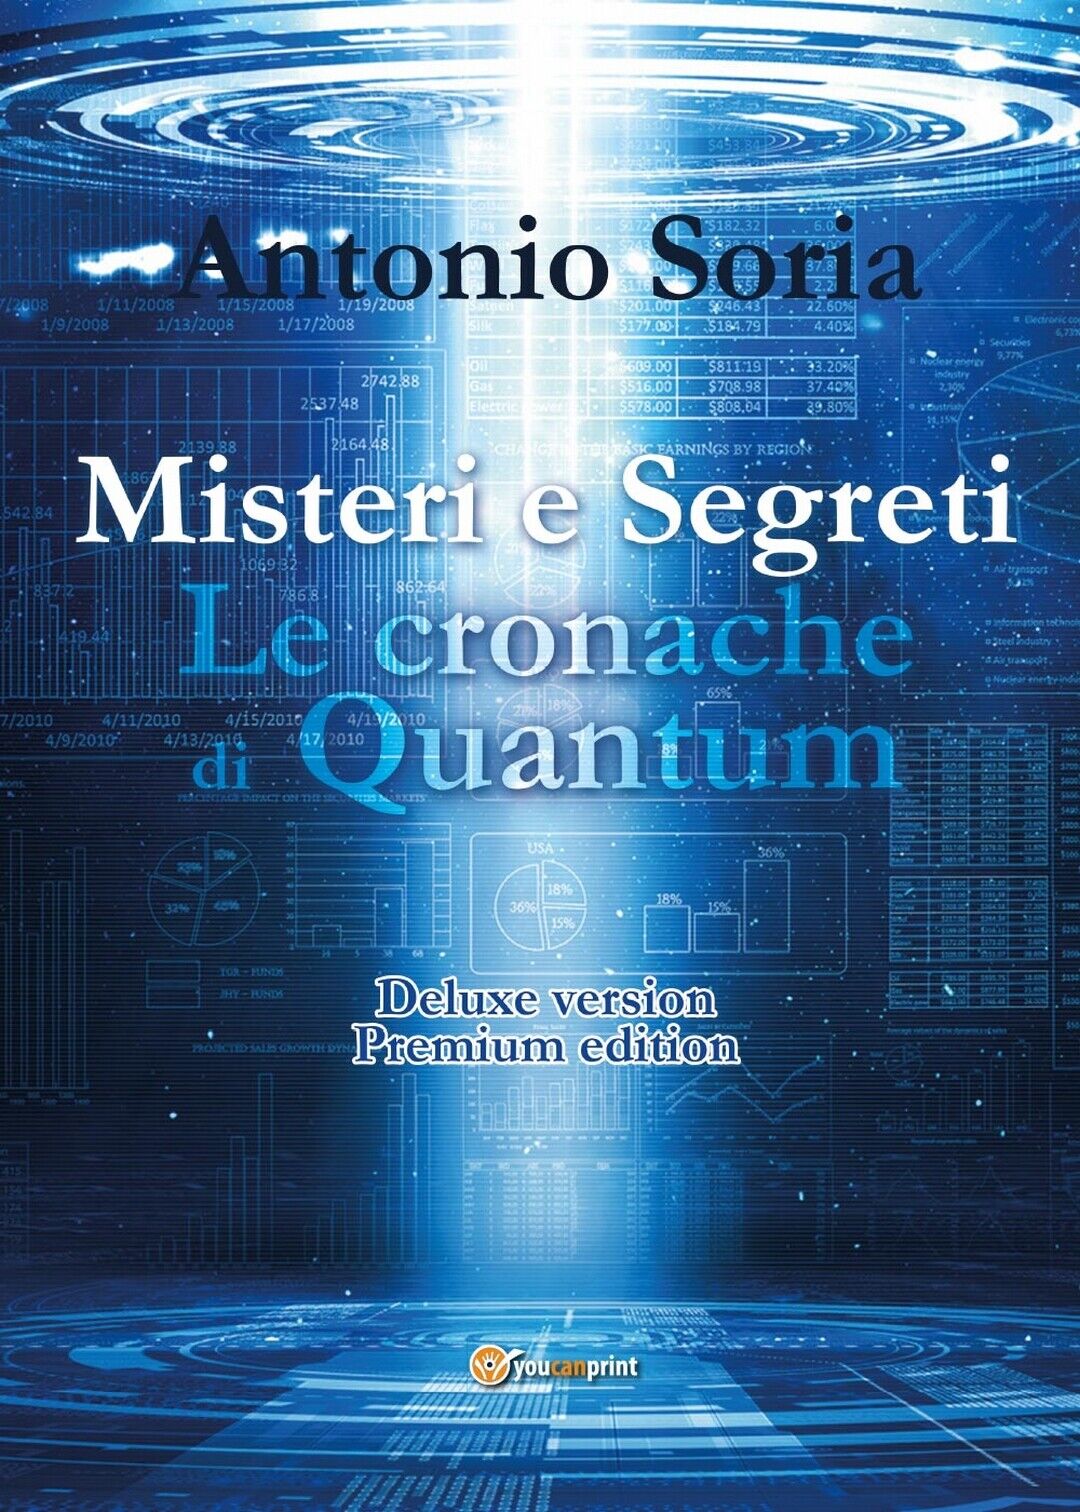 Misteri e Segreti. Le cronache di Quantum (Deluxe version) Premium Edition libro usato